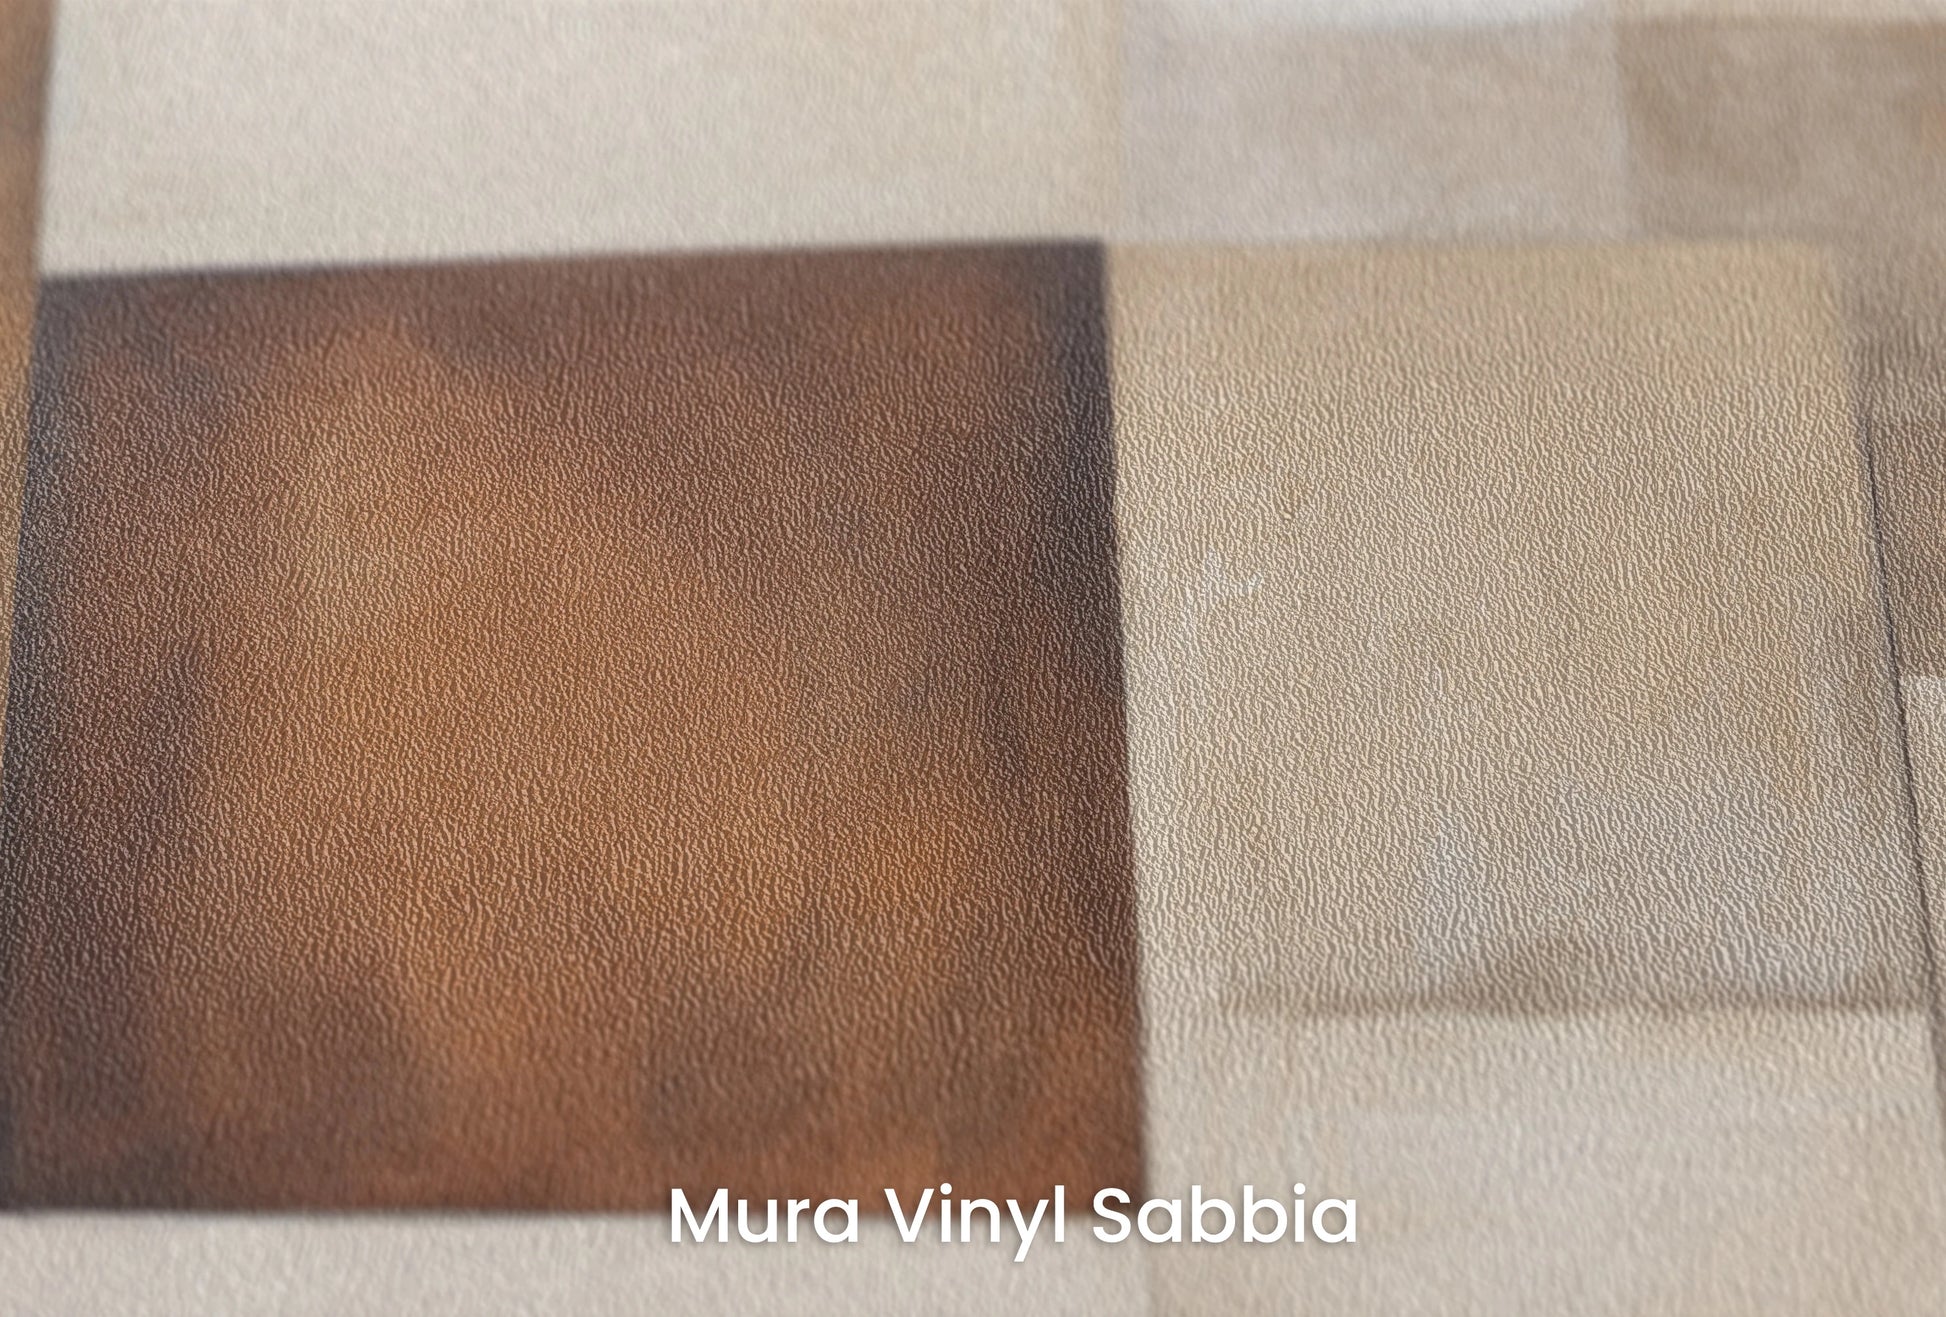 Zbliżenie na artystyczną fototapetę o nazwie Curved Elegance na podłożu Mura Vinyl Sabbia struktura grubego ziarna piasku.